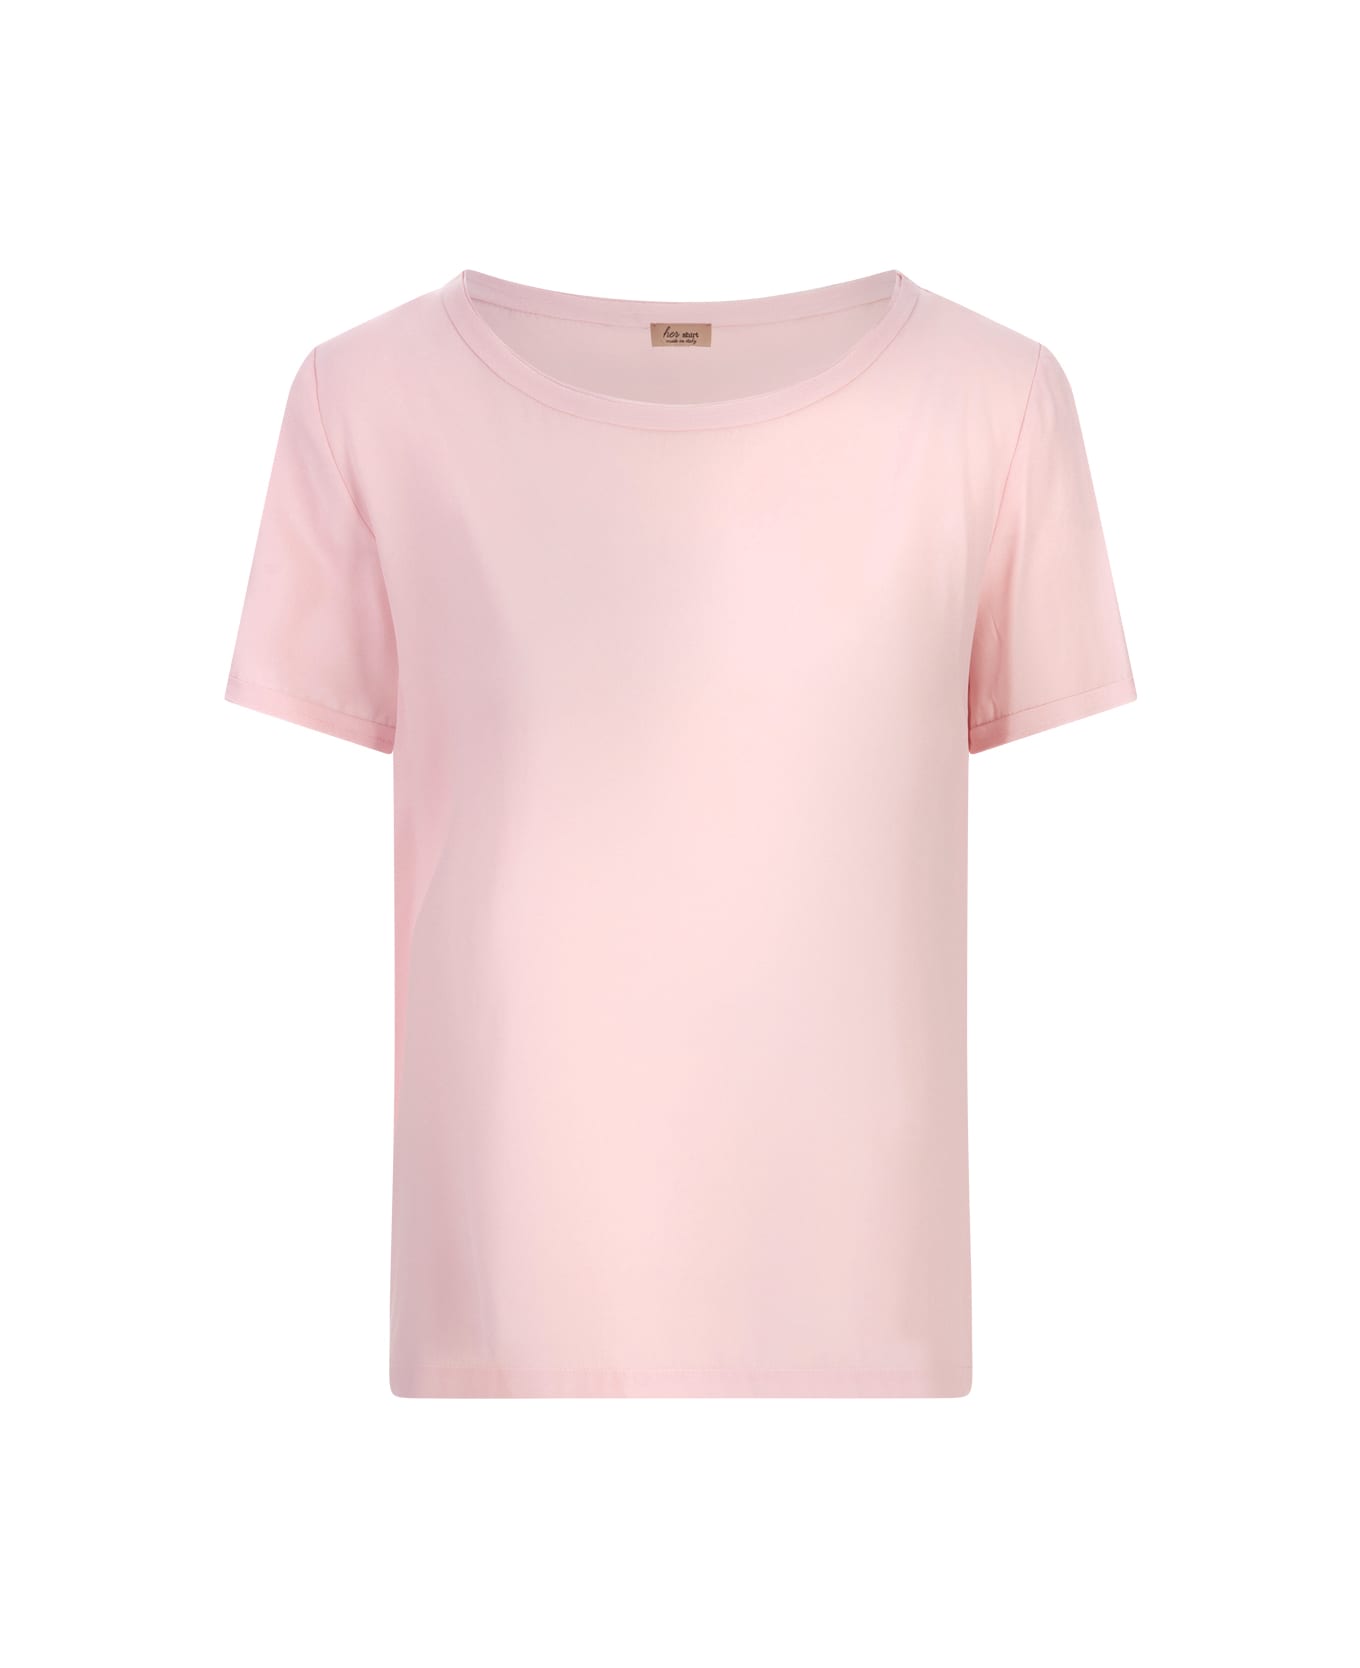 Her Shirt Pink Silk T-shirt - Pink